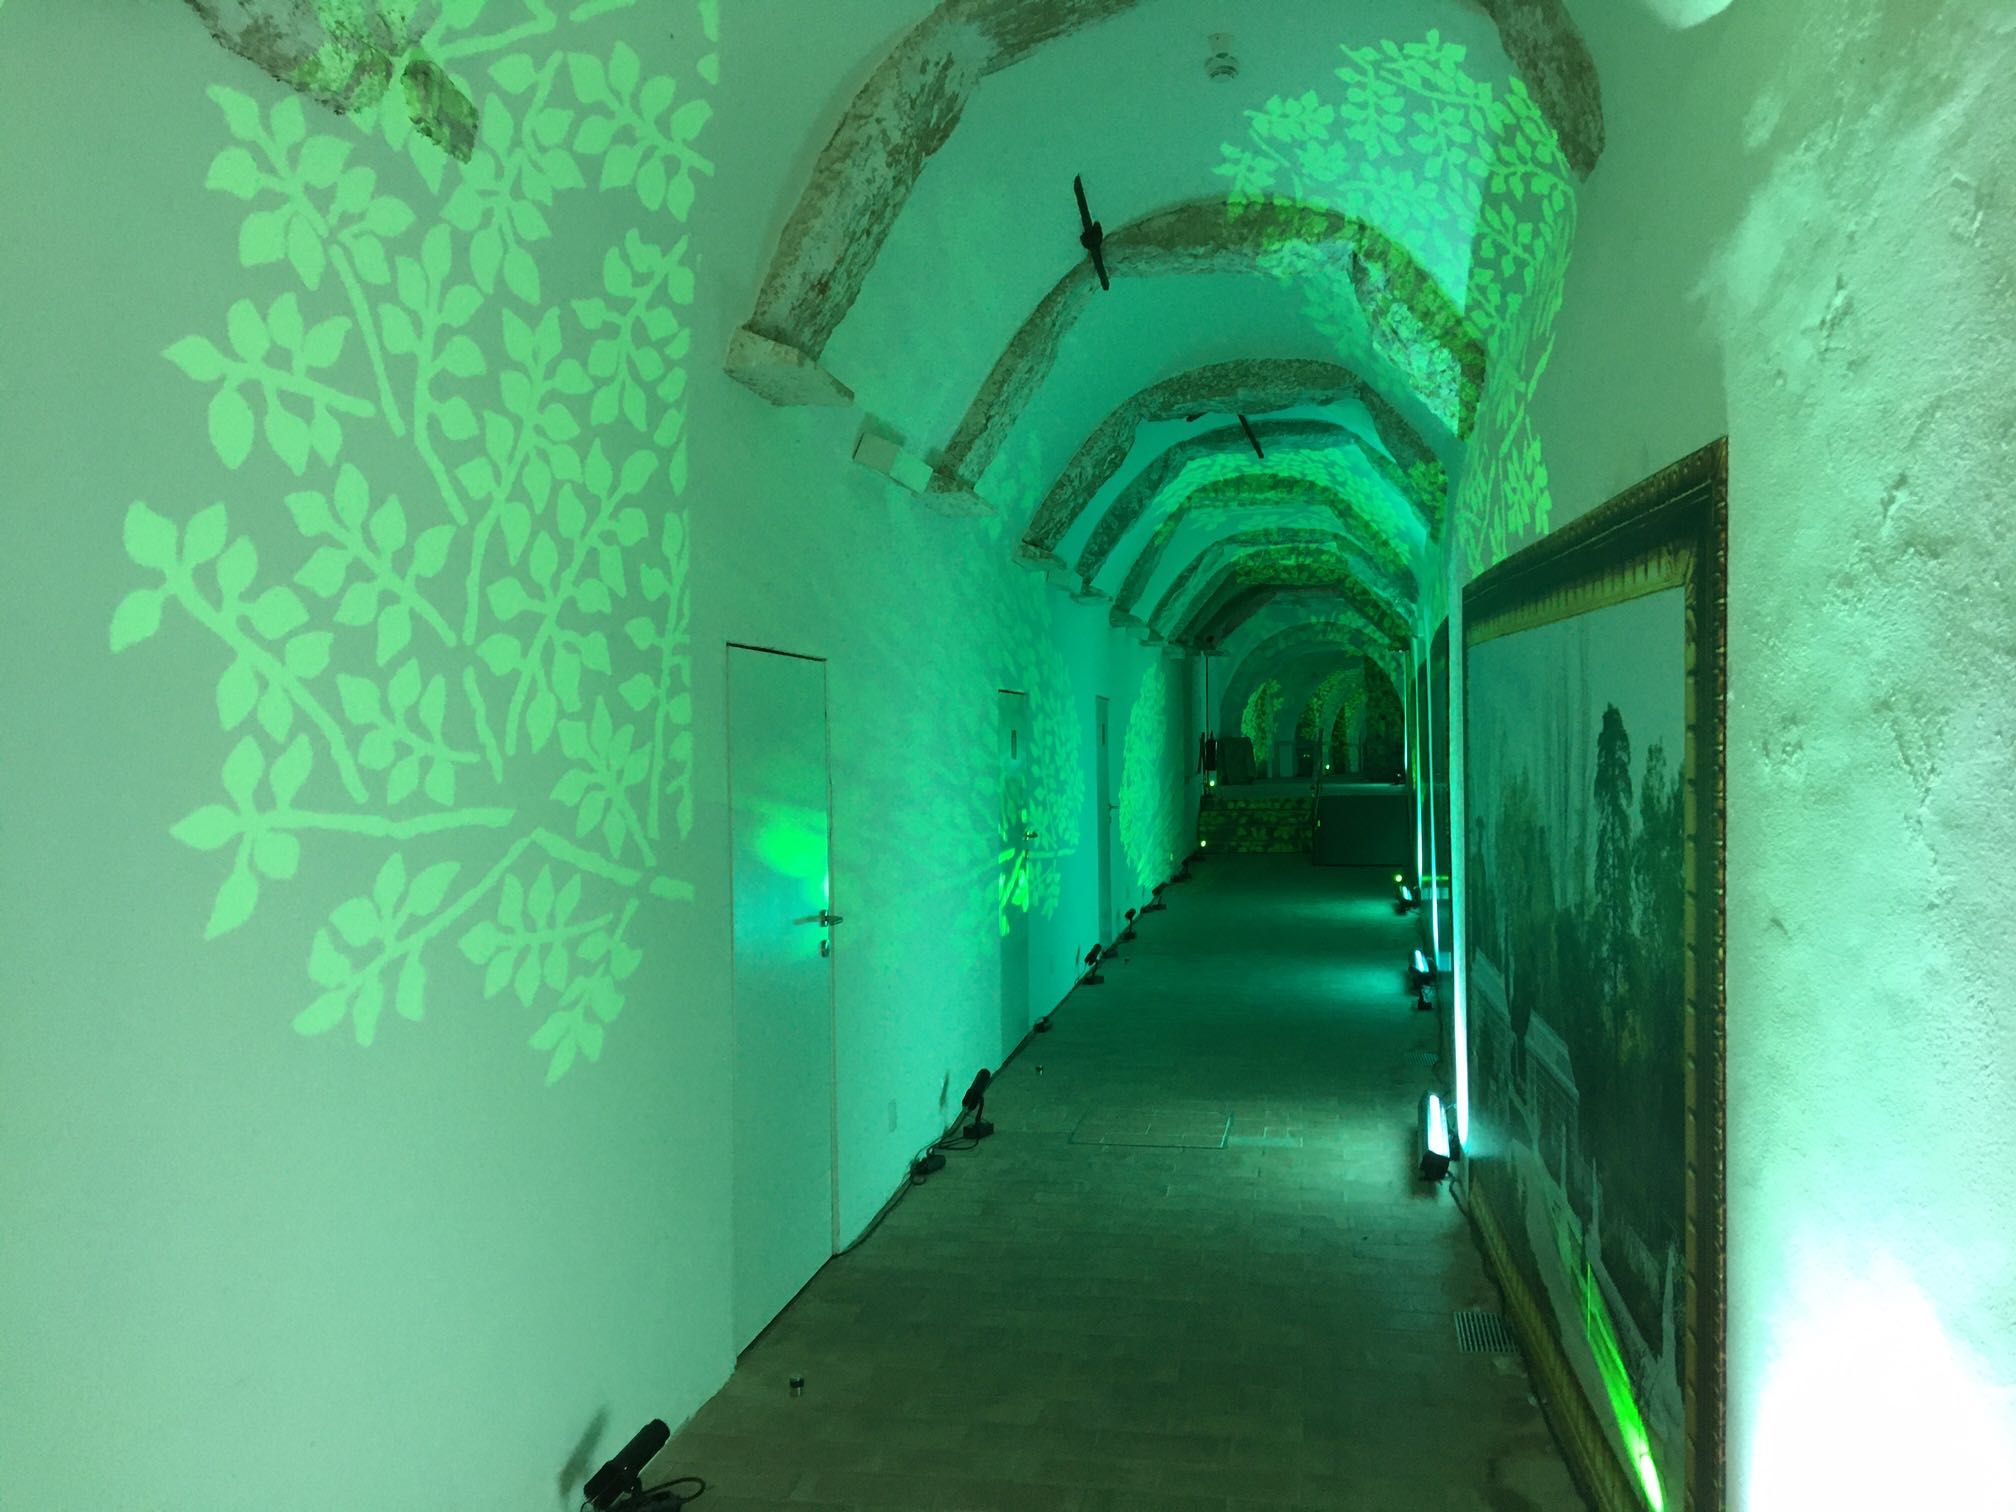 24 projetores de led logo gobo -como novos - gobos verde floresta